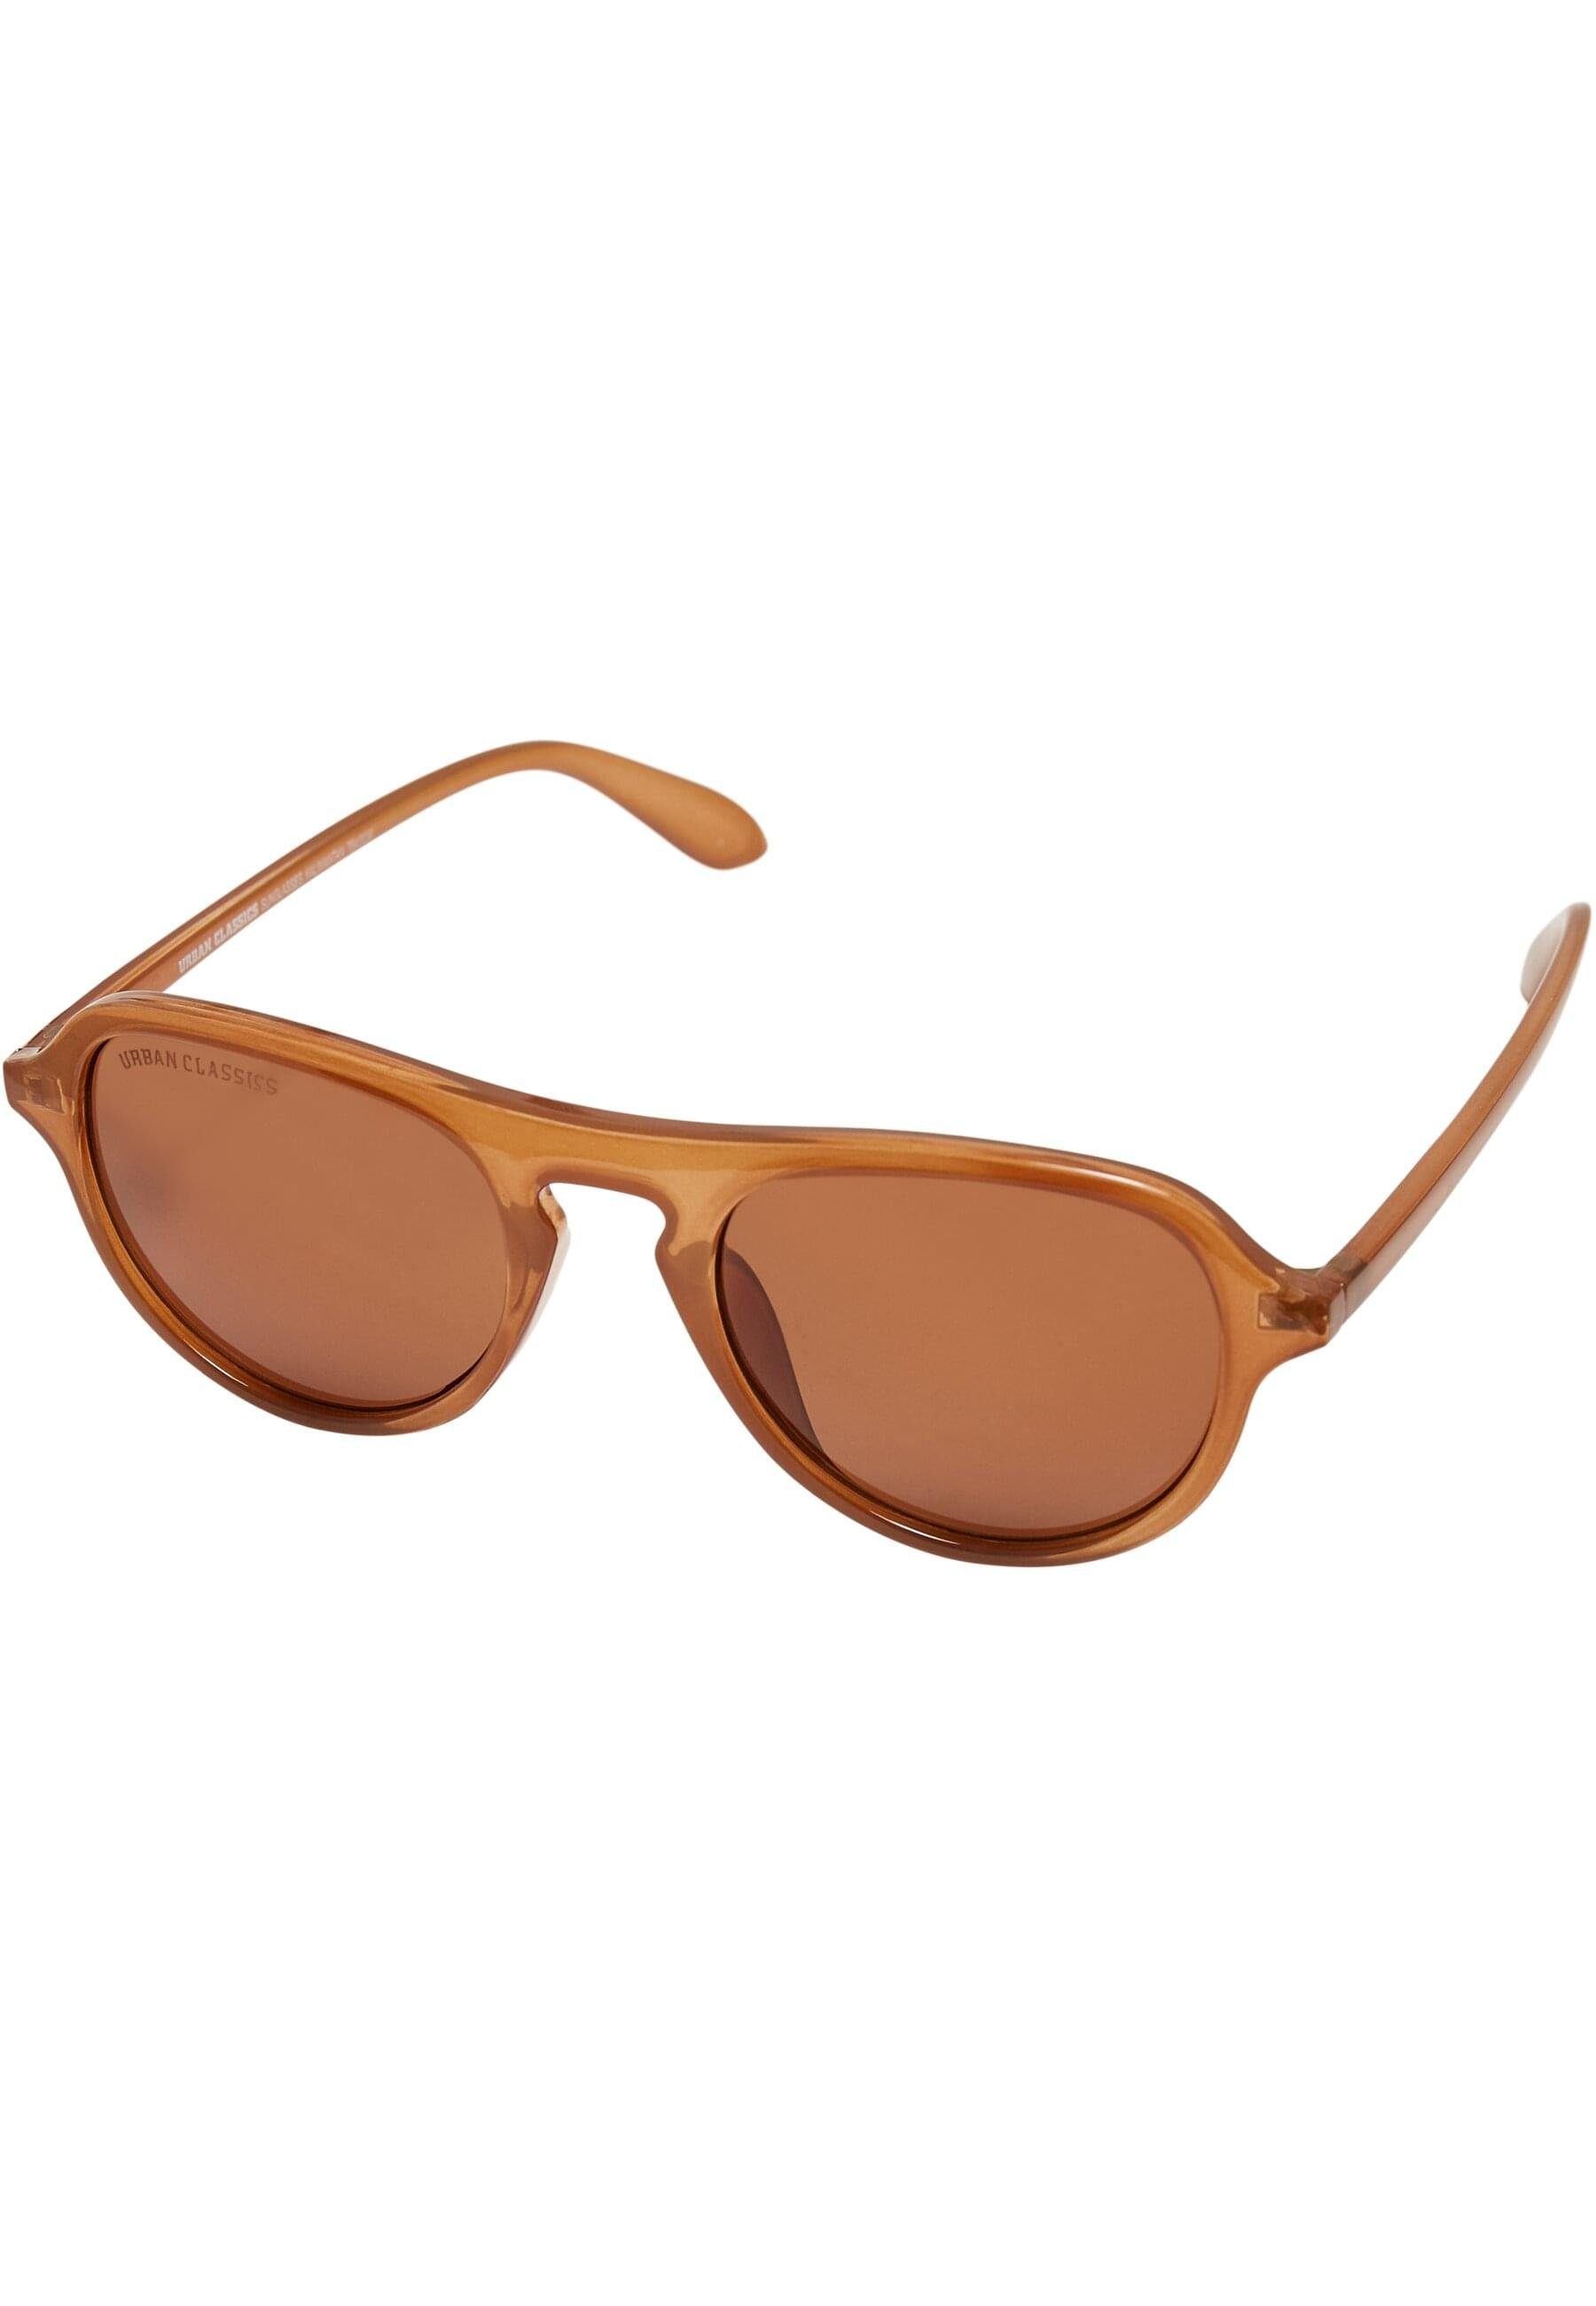 Unisex Sonnenbrille URBAN 3-Pack Sunglasses CLASSICS Kalimantan